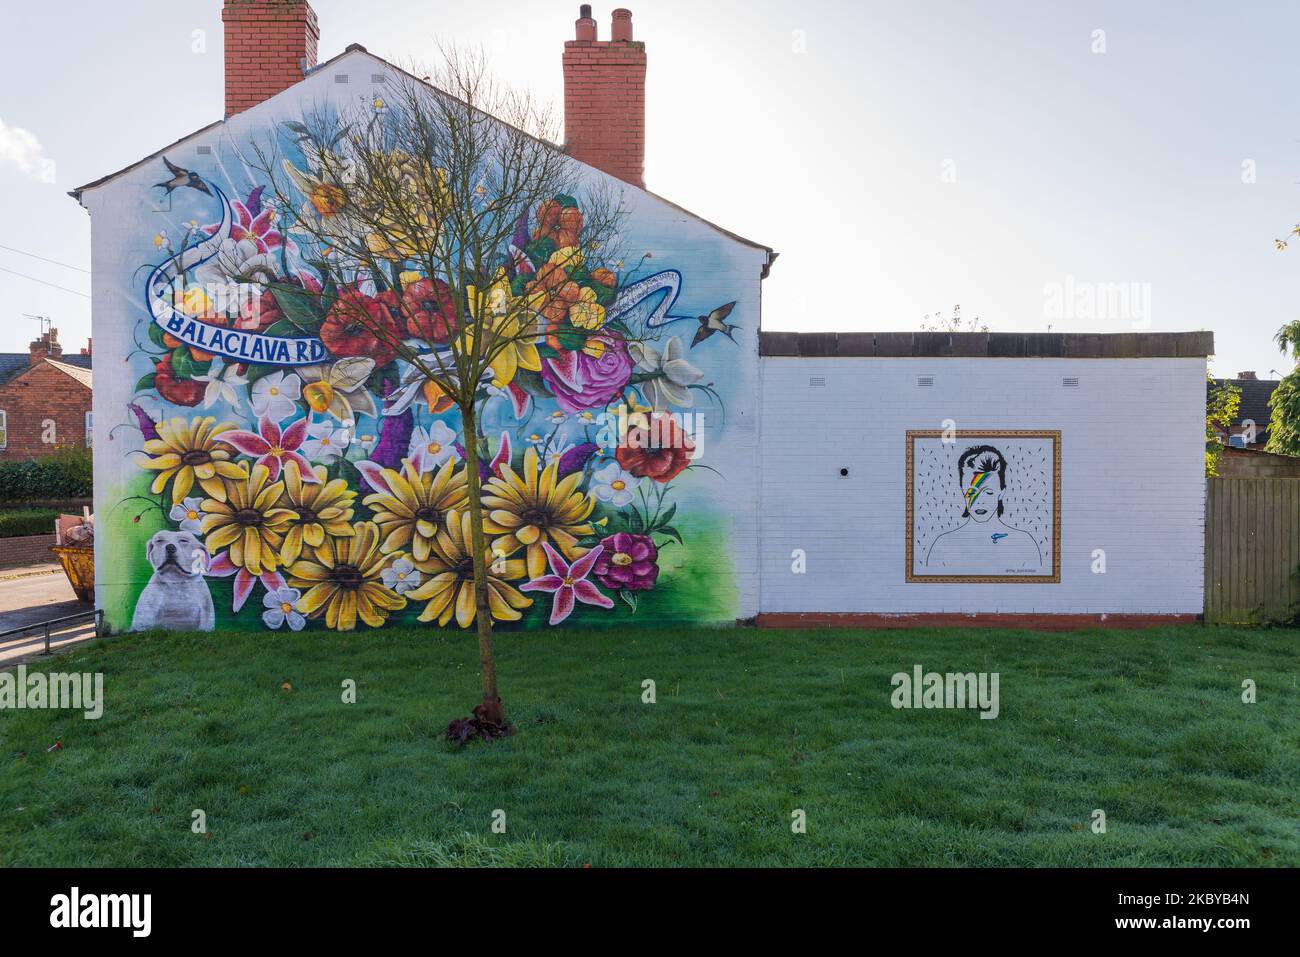 Peinture colorée de la faune et des fleurs peintes sur le mur d'extrémité d'une maison en terrasse à Balaclava Road, Kings Heath, Birmingham Banque D'Images